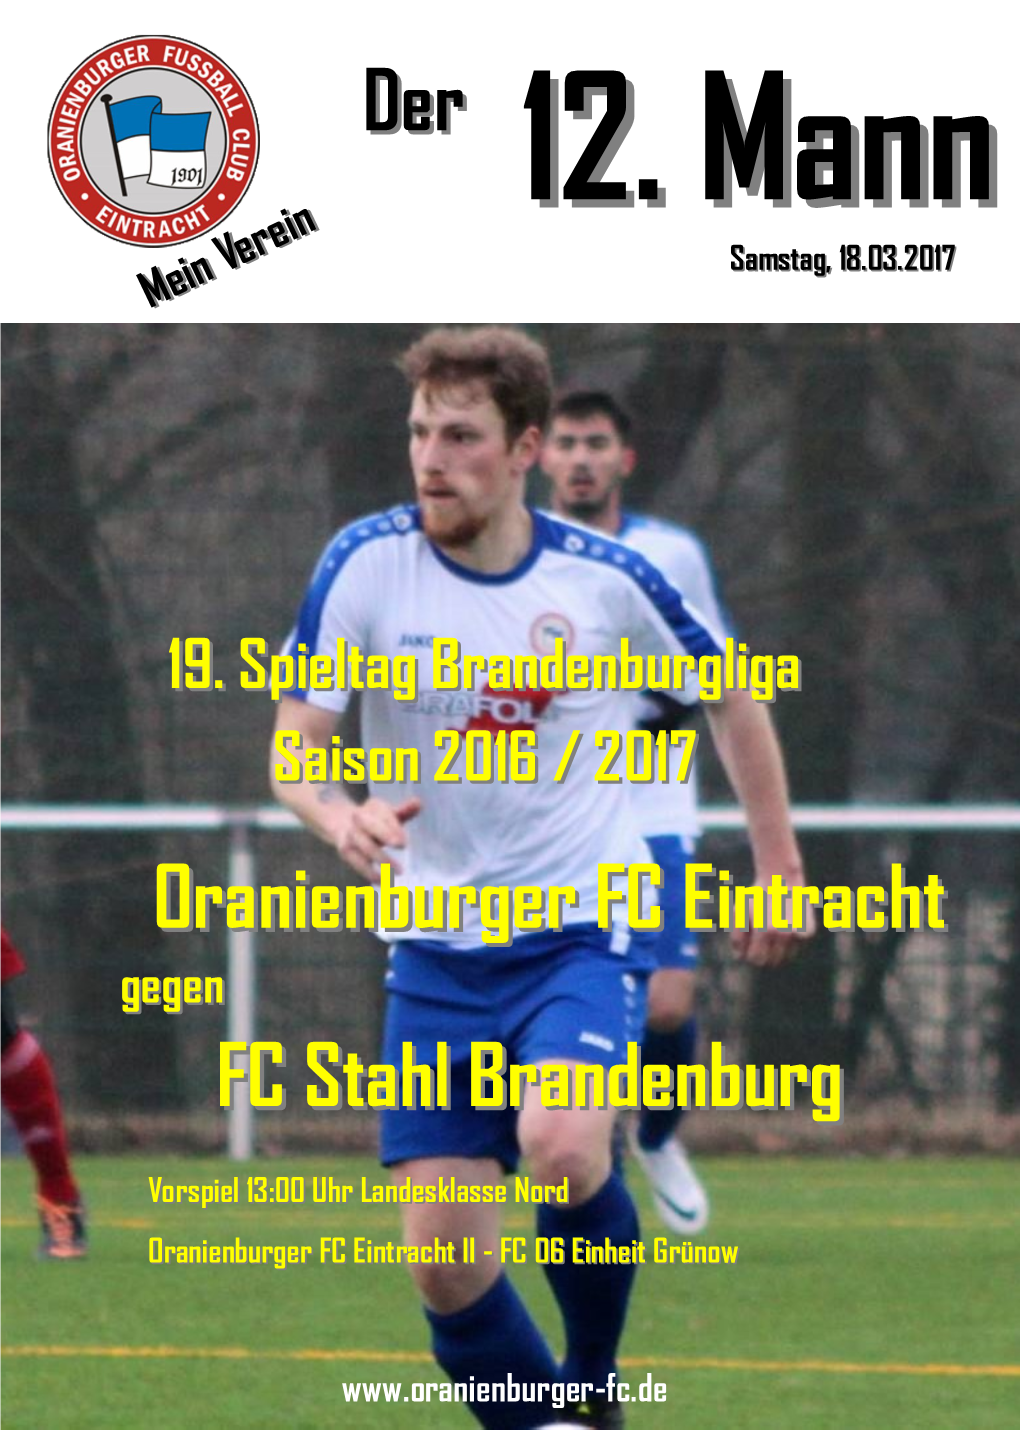 FC Stahl Brandenburg Oranienburger FC Eintracht